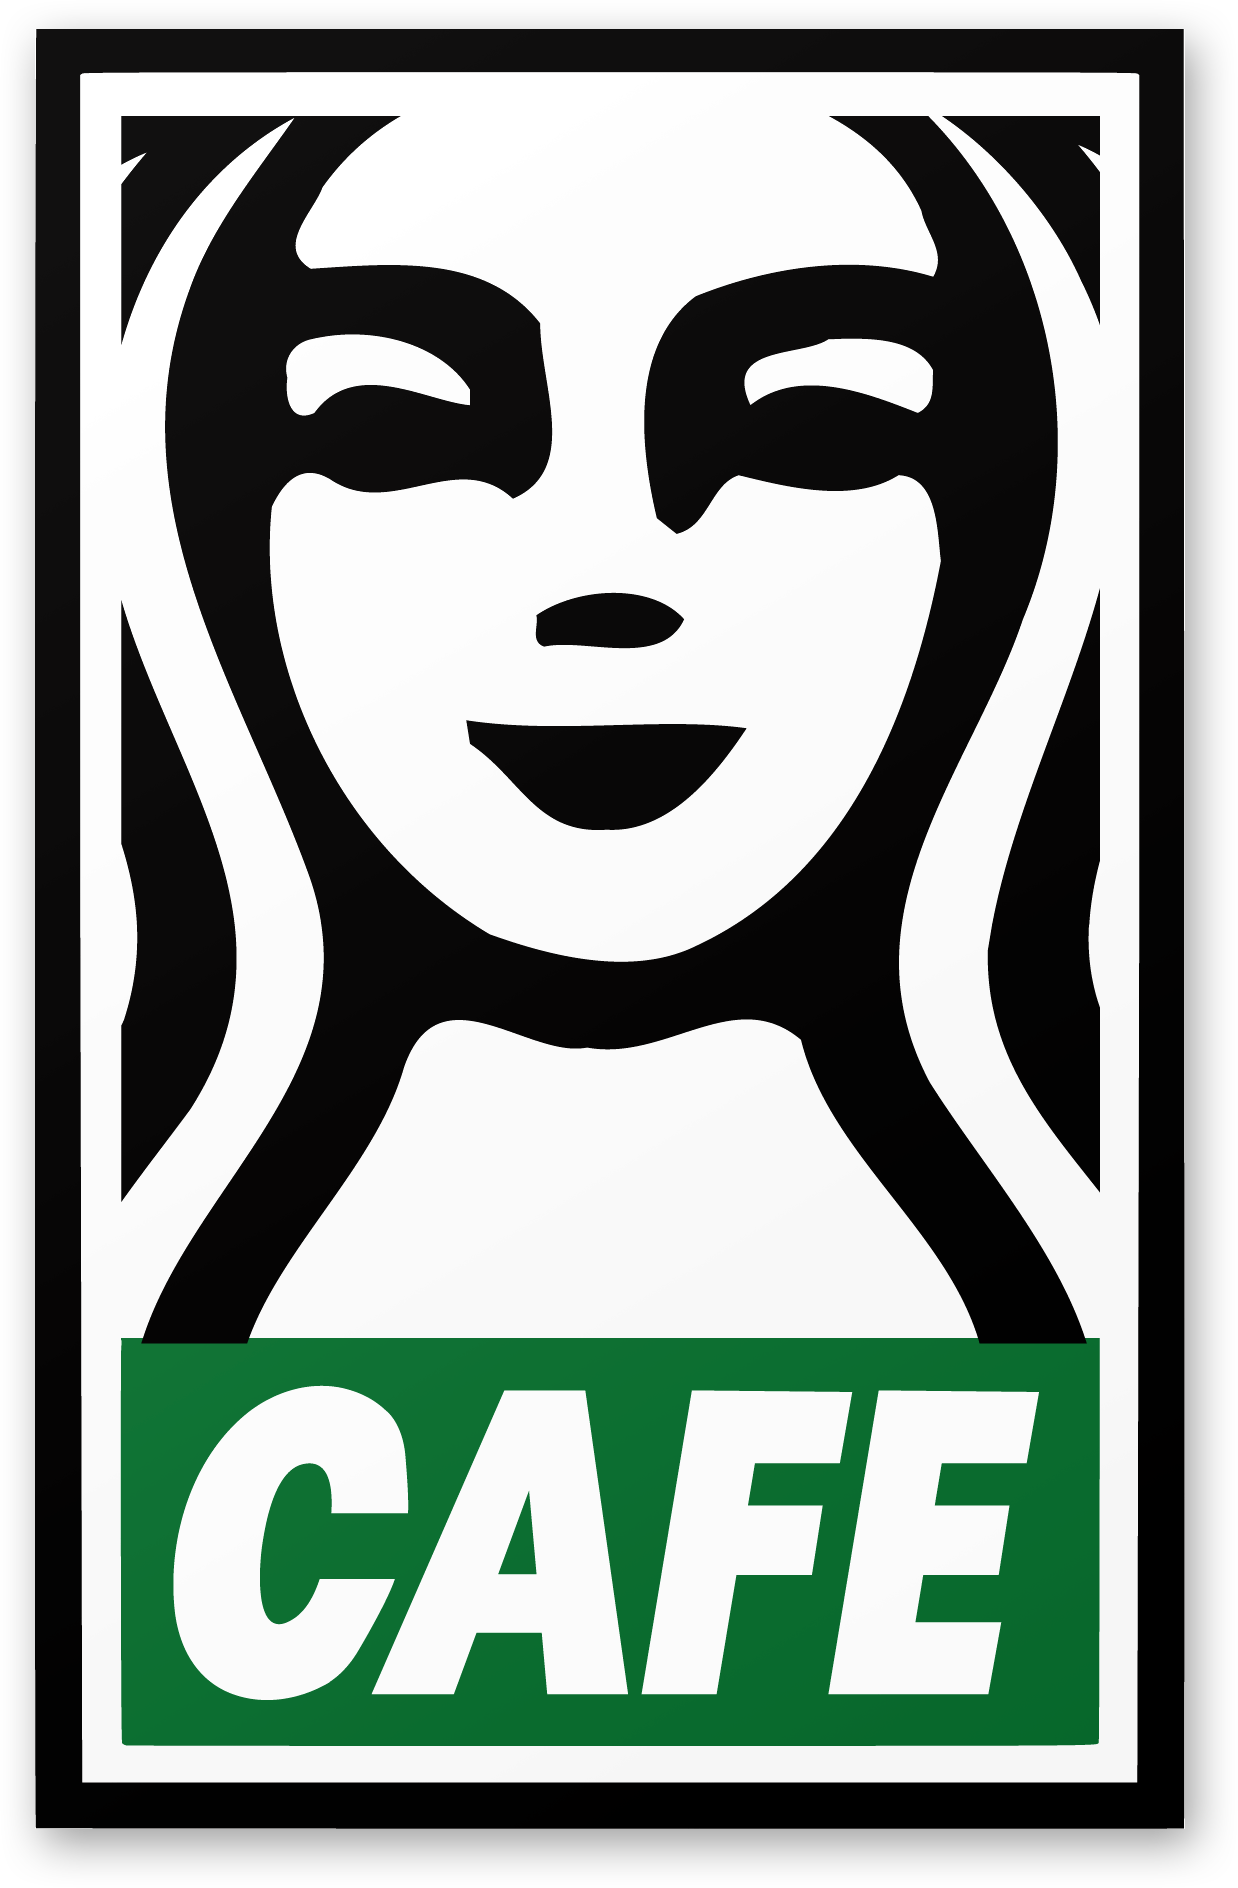 Cool Starbucks Logo - The Fraternity of Starbucks — Steve Lovelace